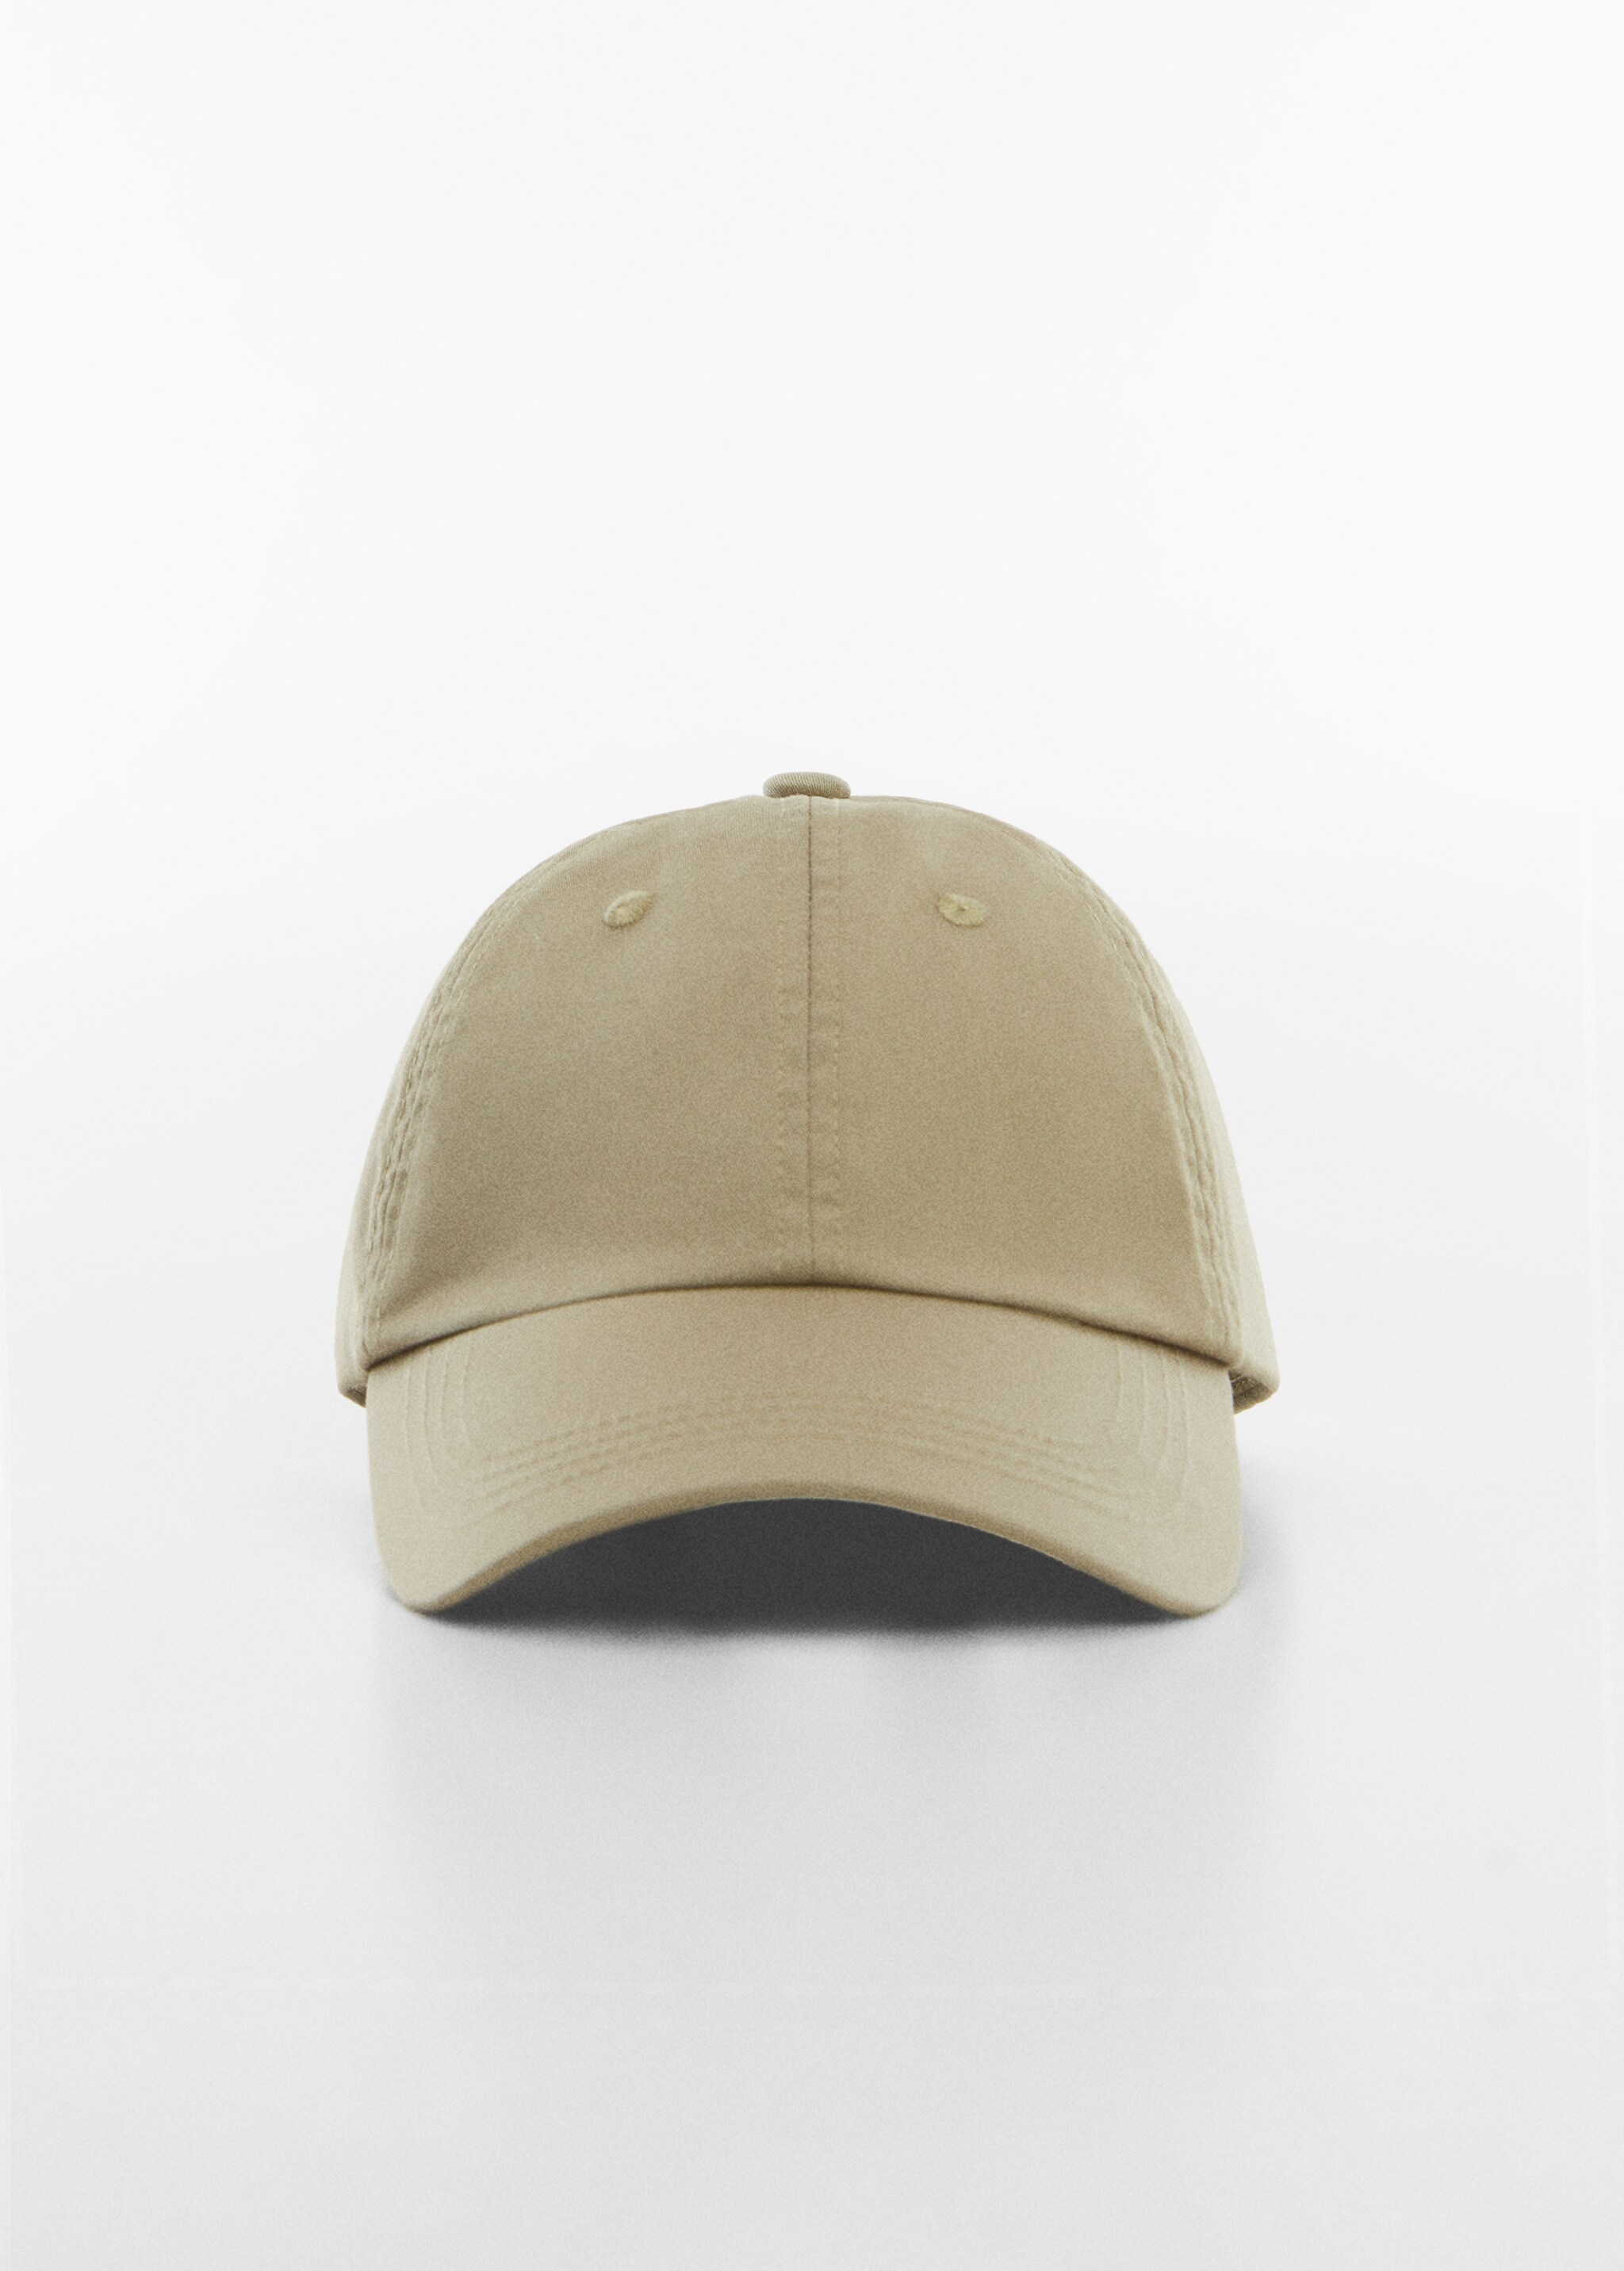 Cotton visor cap - Medium plane